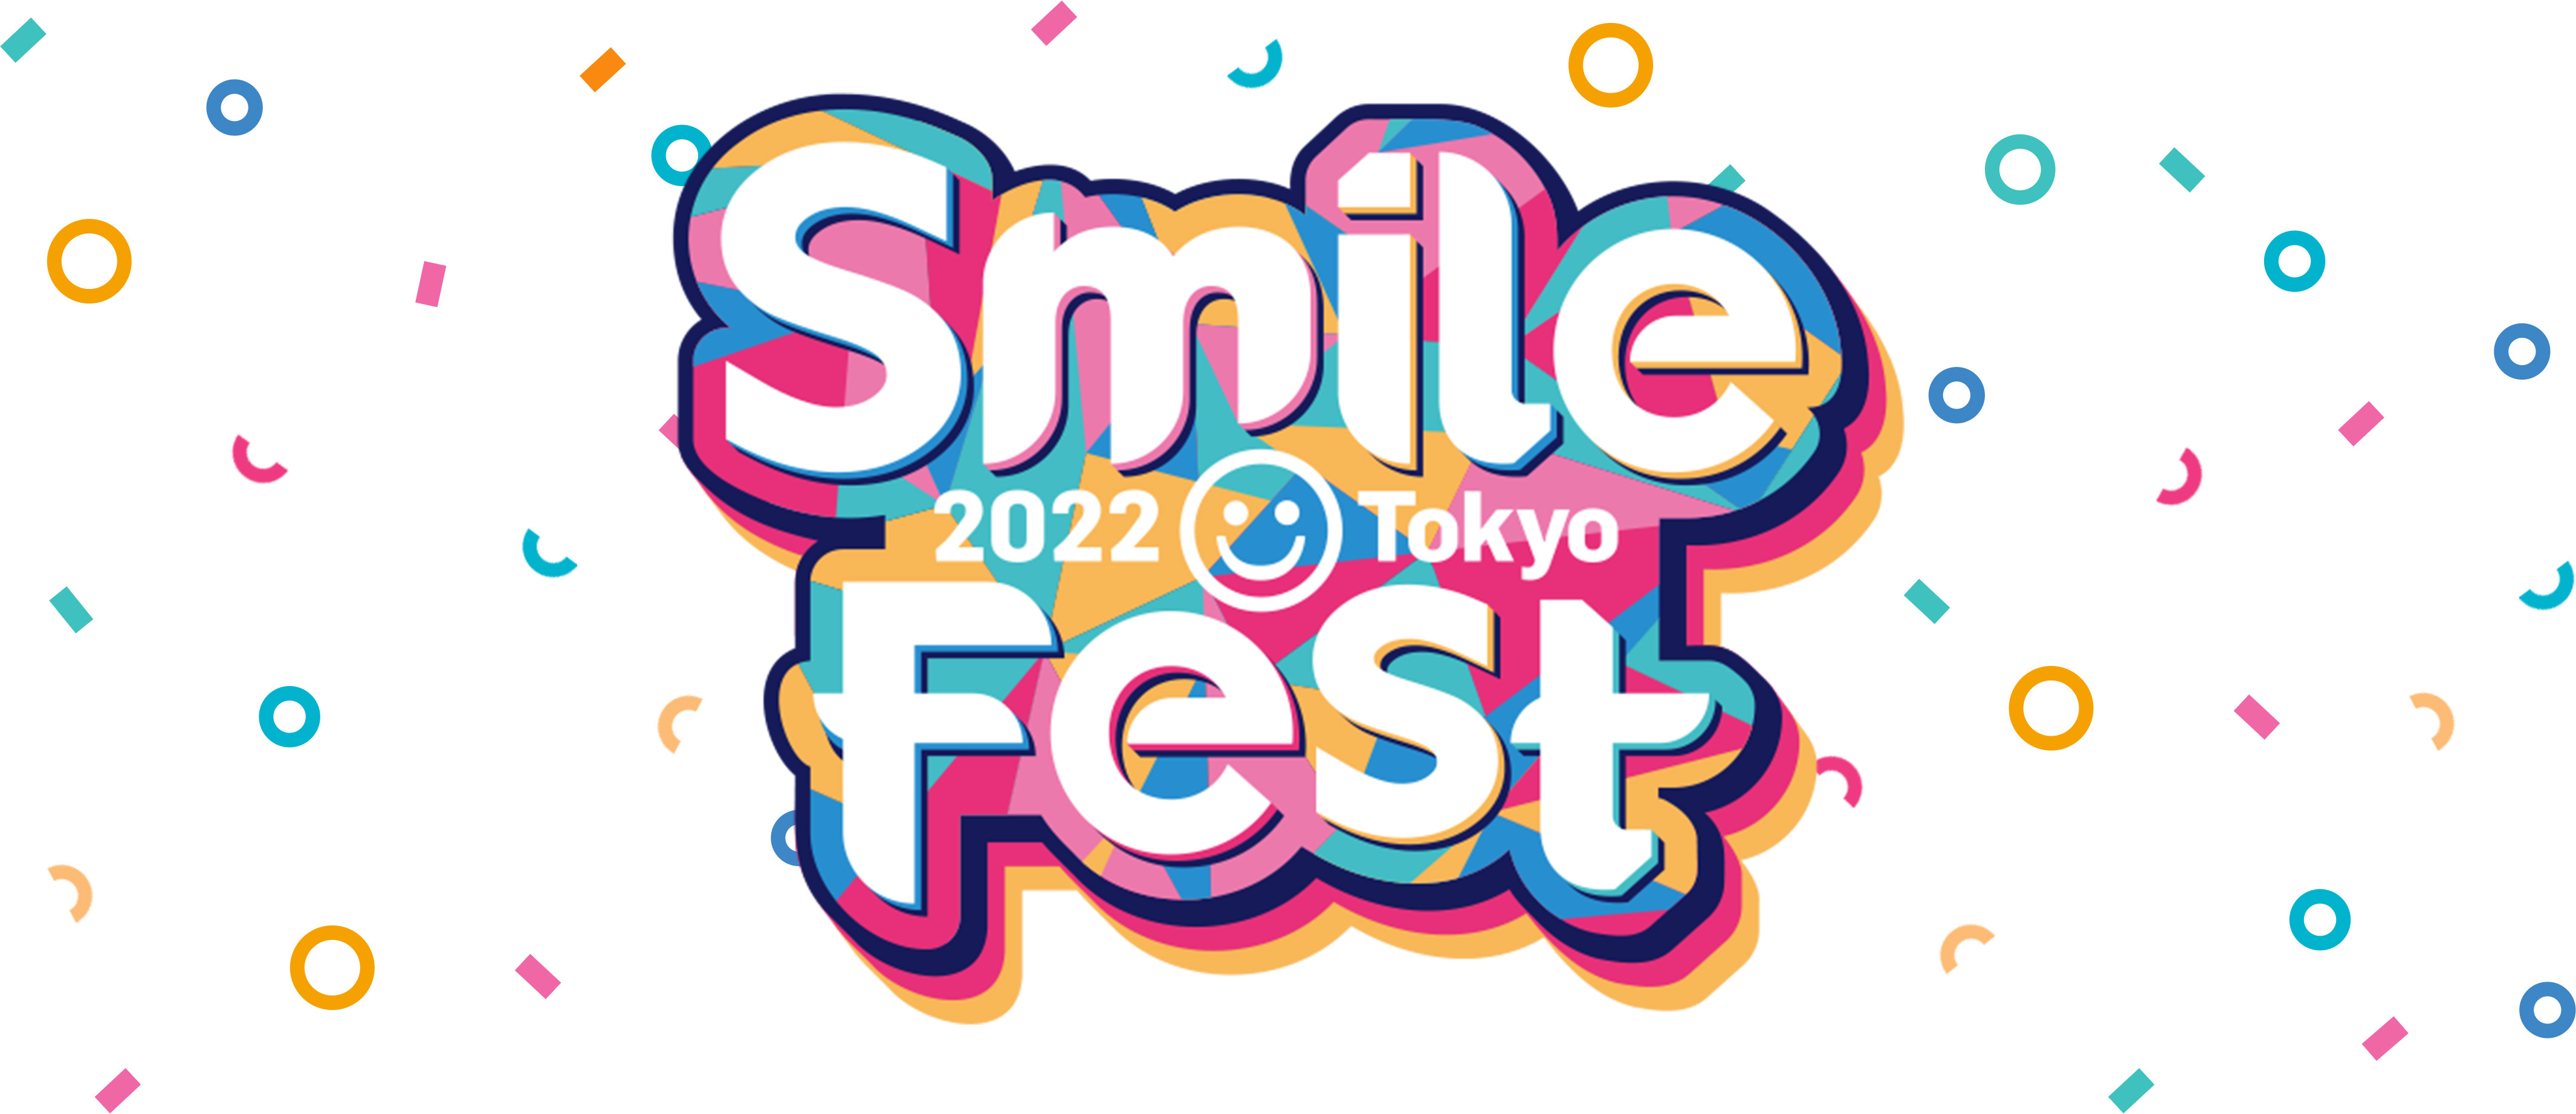 アニメグッズメーカーの大手グッドスマイルカンパニーが開催するスマイルフェス2022が東京新宿で開催！